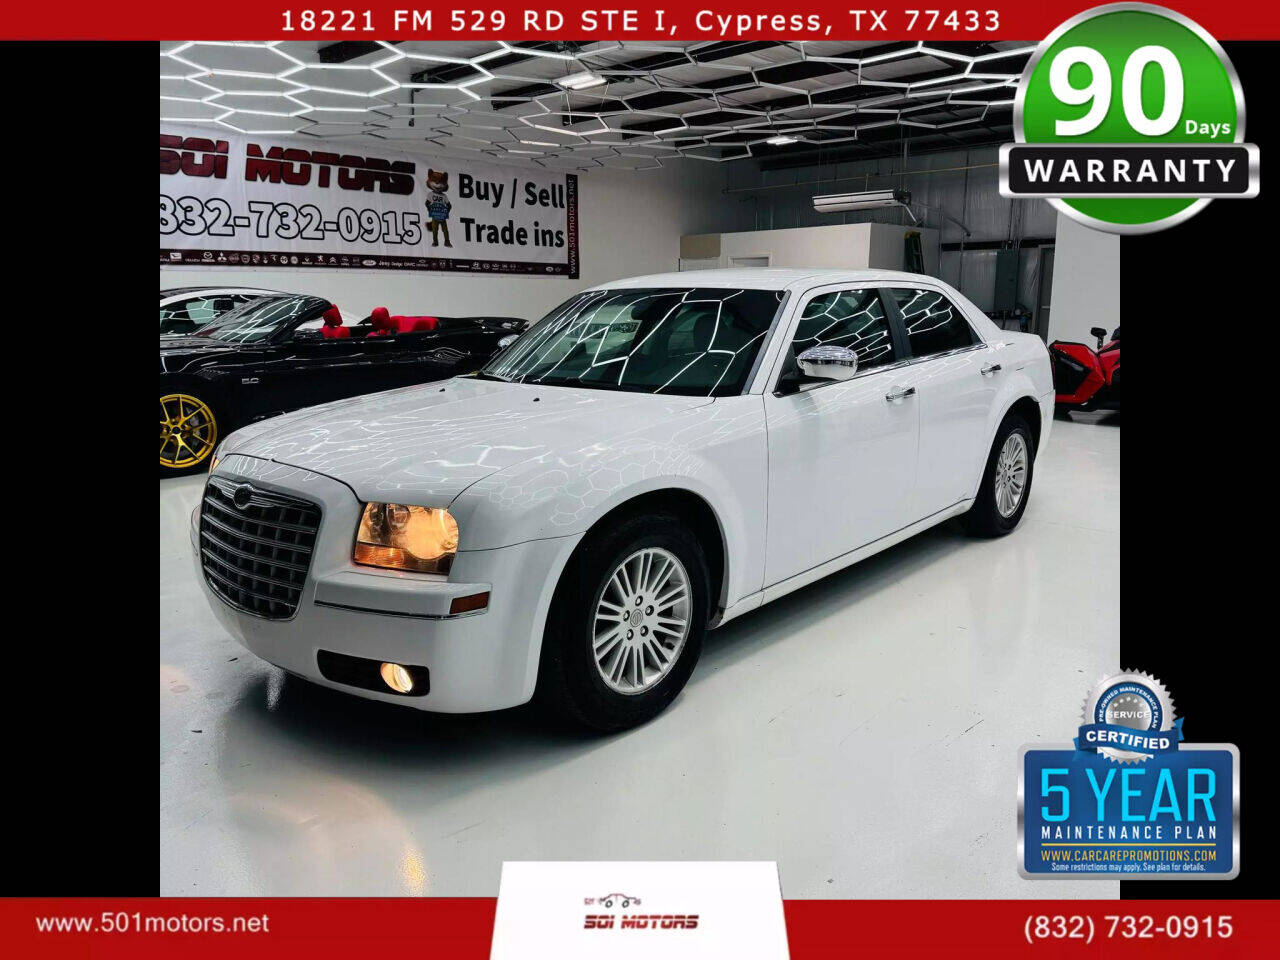 2010 Chrysler 300 For Sale - ®